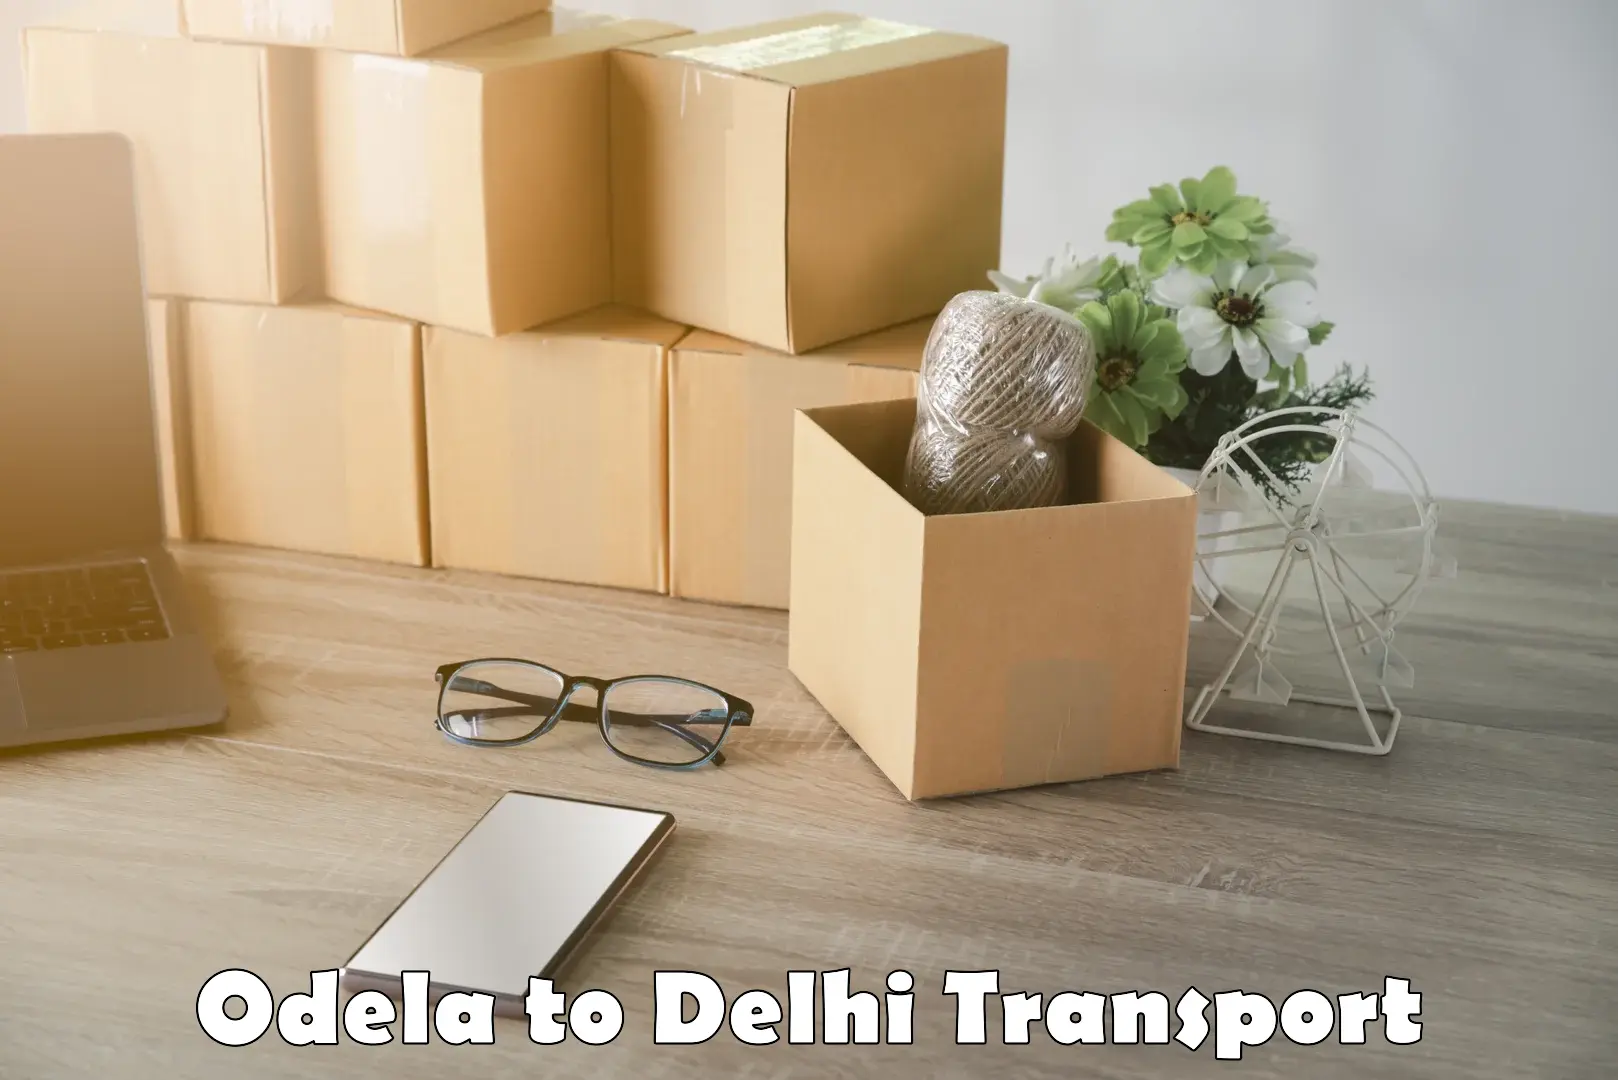 Cargo transport services Odela to Delhi Technological University DTU